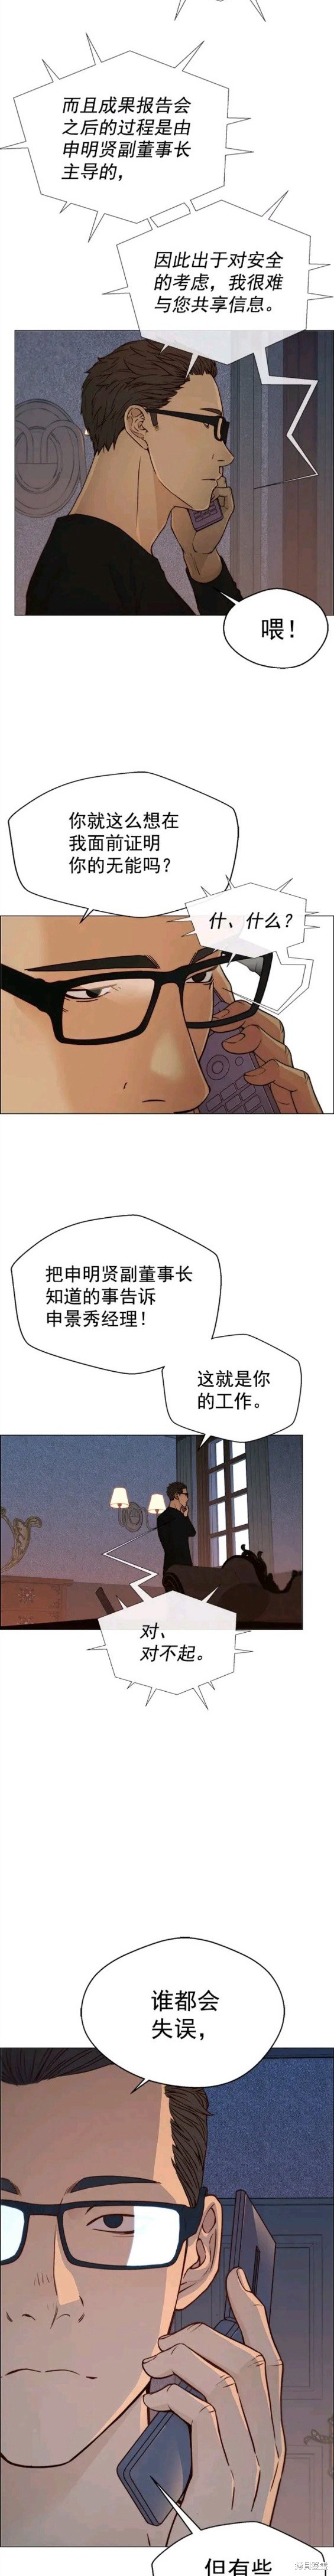 男子汉漫画,第121话2图